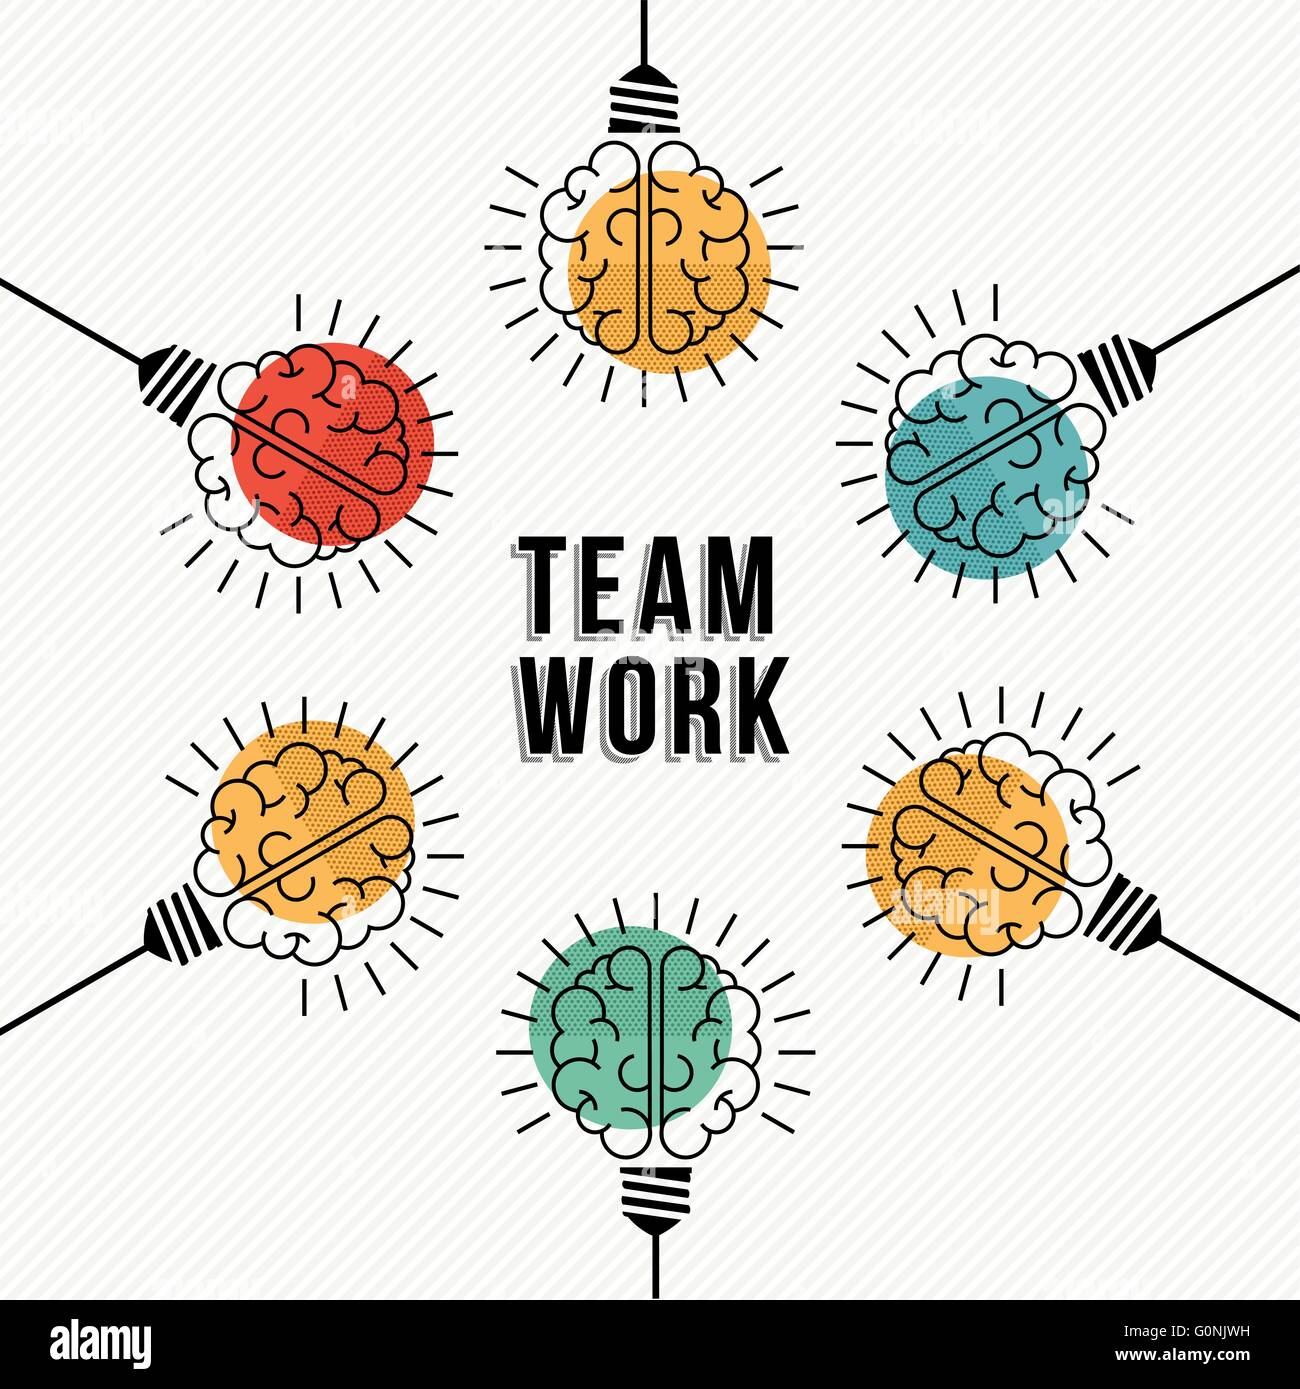 Moderne Teamarbeit Konzeptdesign, bunte menschliche Gehirne in Glühbirne Lampen als Business-Team zusammenarbeiten. EPS10 Vektor. Stock Vektor